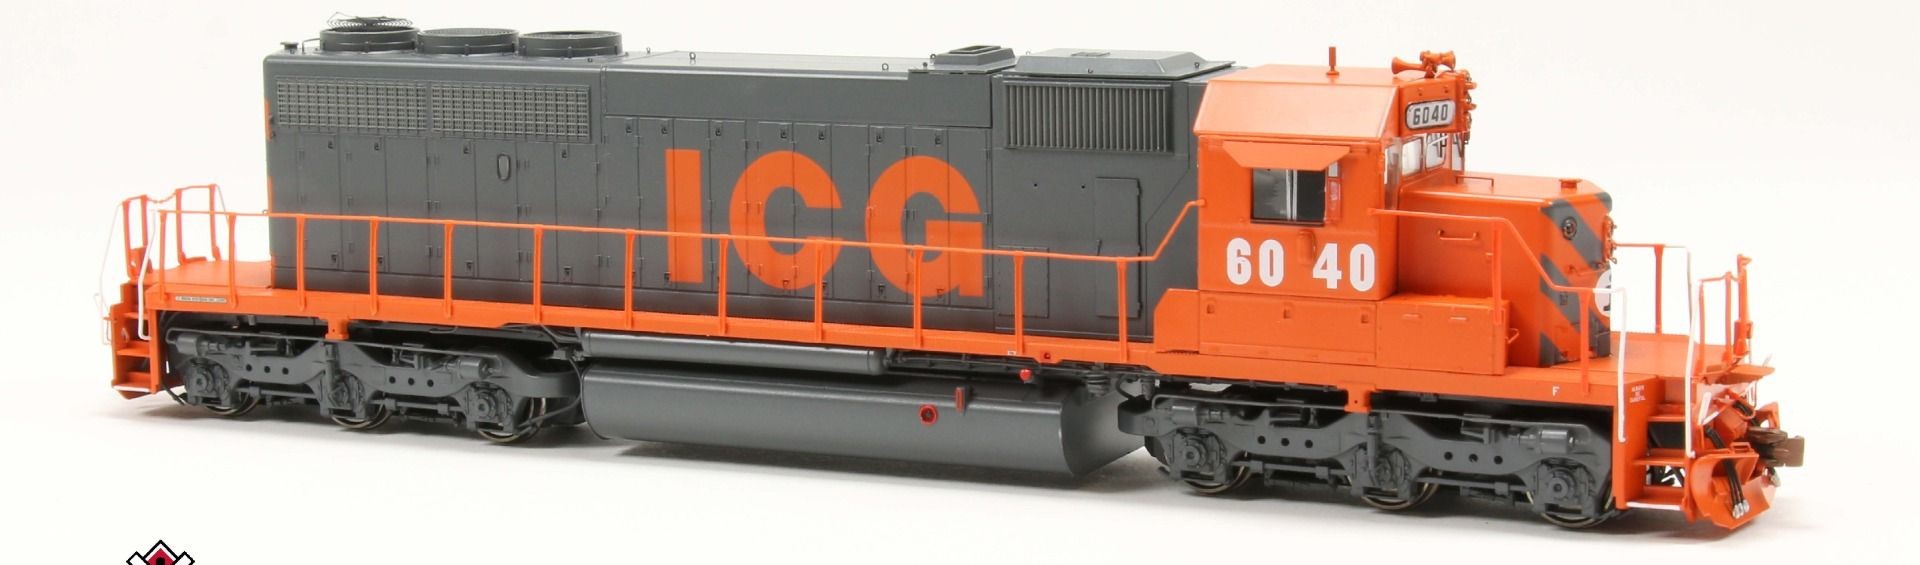 ScaleTrains Rivet Counter HO SXT38803 DCC/ESU Loksound 5 Equipped EMD SD40-2 Locomotive ICG 'Orange & Gray' ICG #6040